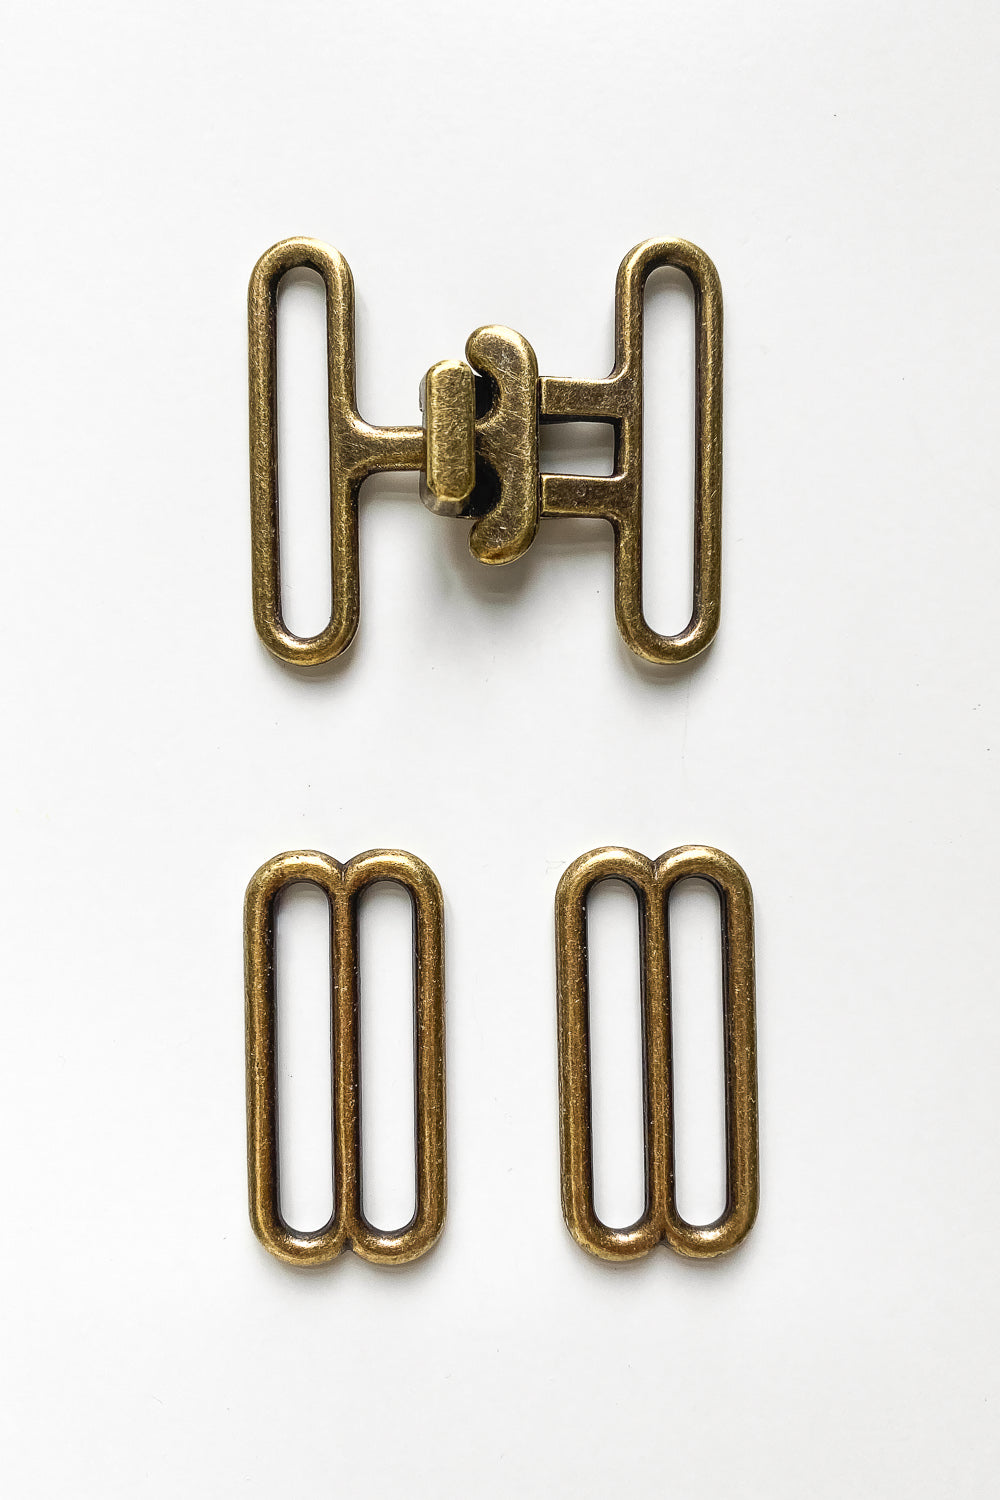 Antique Brass Belt Buckle - 1 1/2 (38mm) Wide – Closet Core Patterns